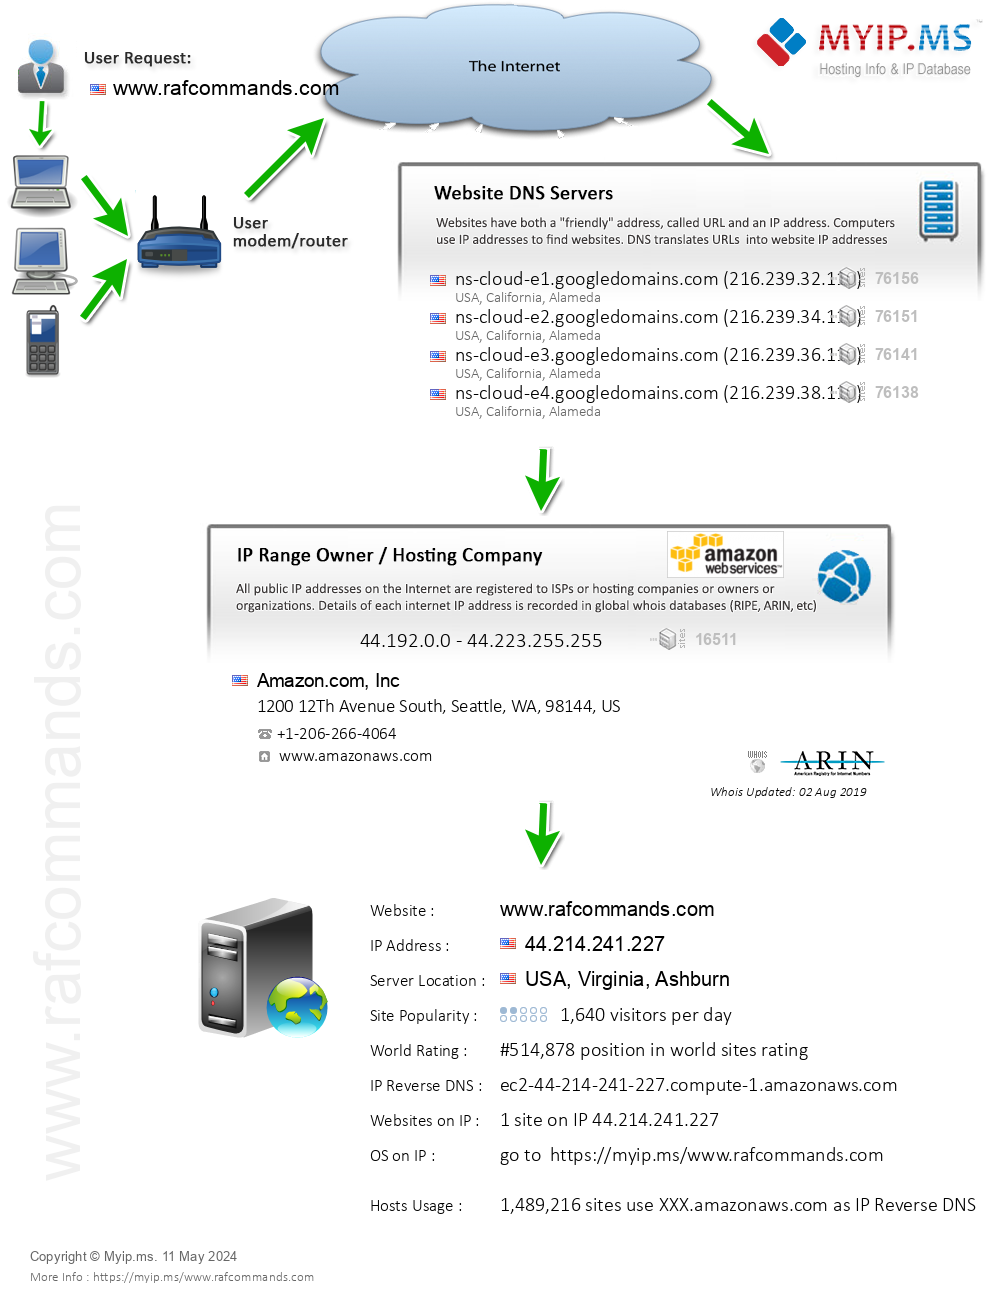 Rafcommands.com - Website Hosting Visual IP Diagram